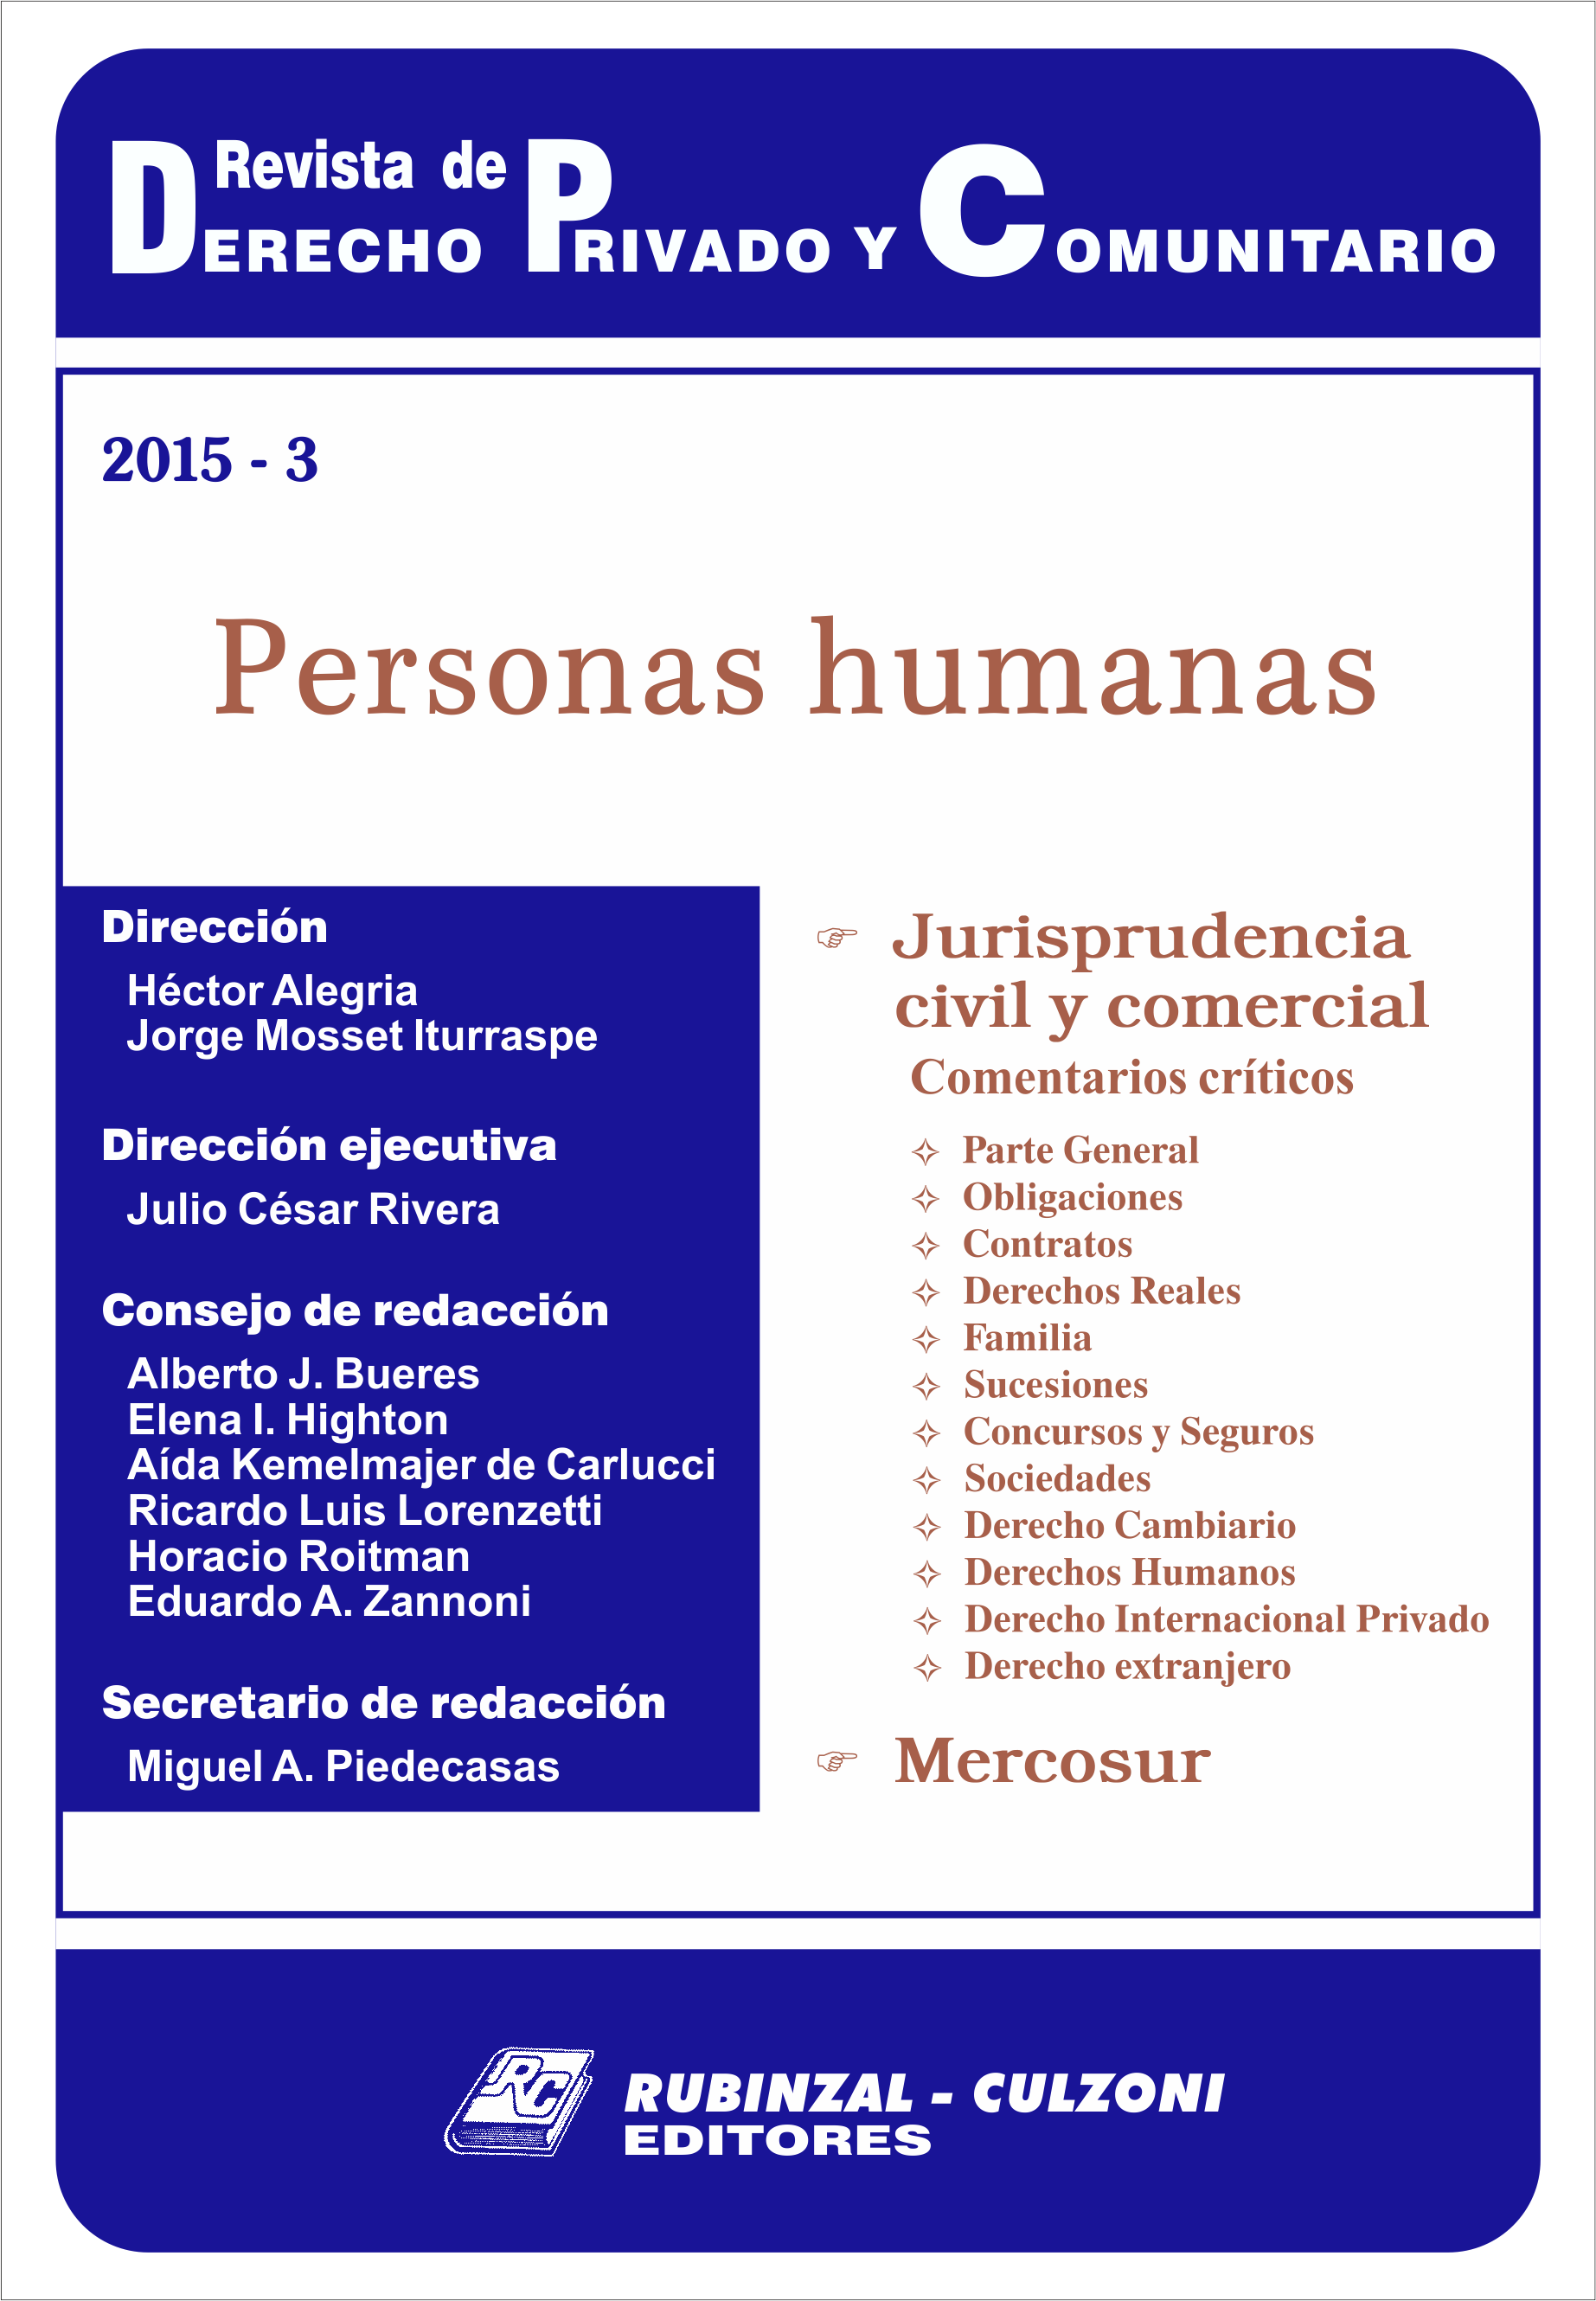 Revista de Derecho Privado y Comunitario - Personas humanas.